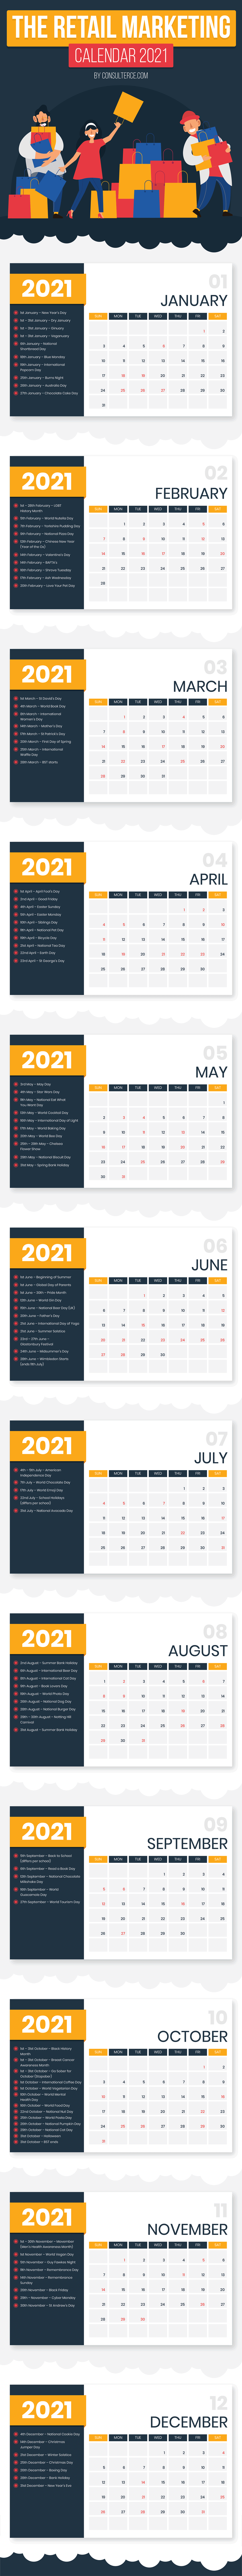 Calendario Eventos E-commerce 2021